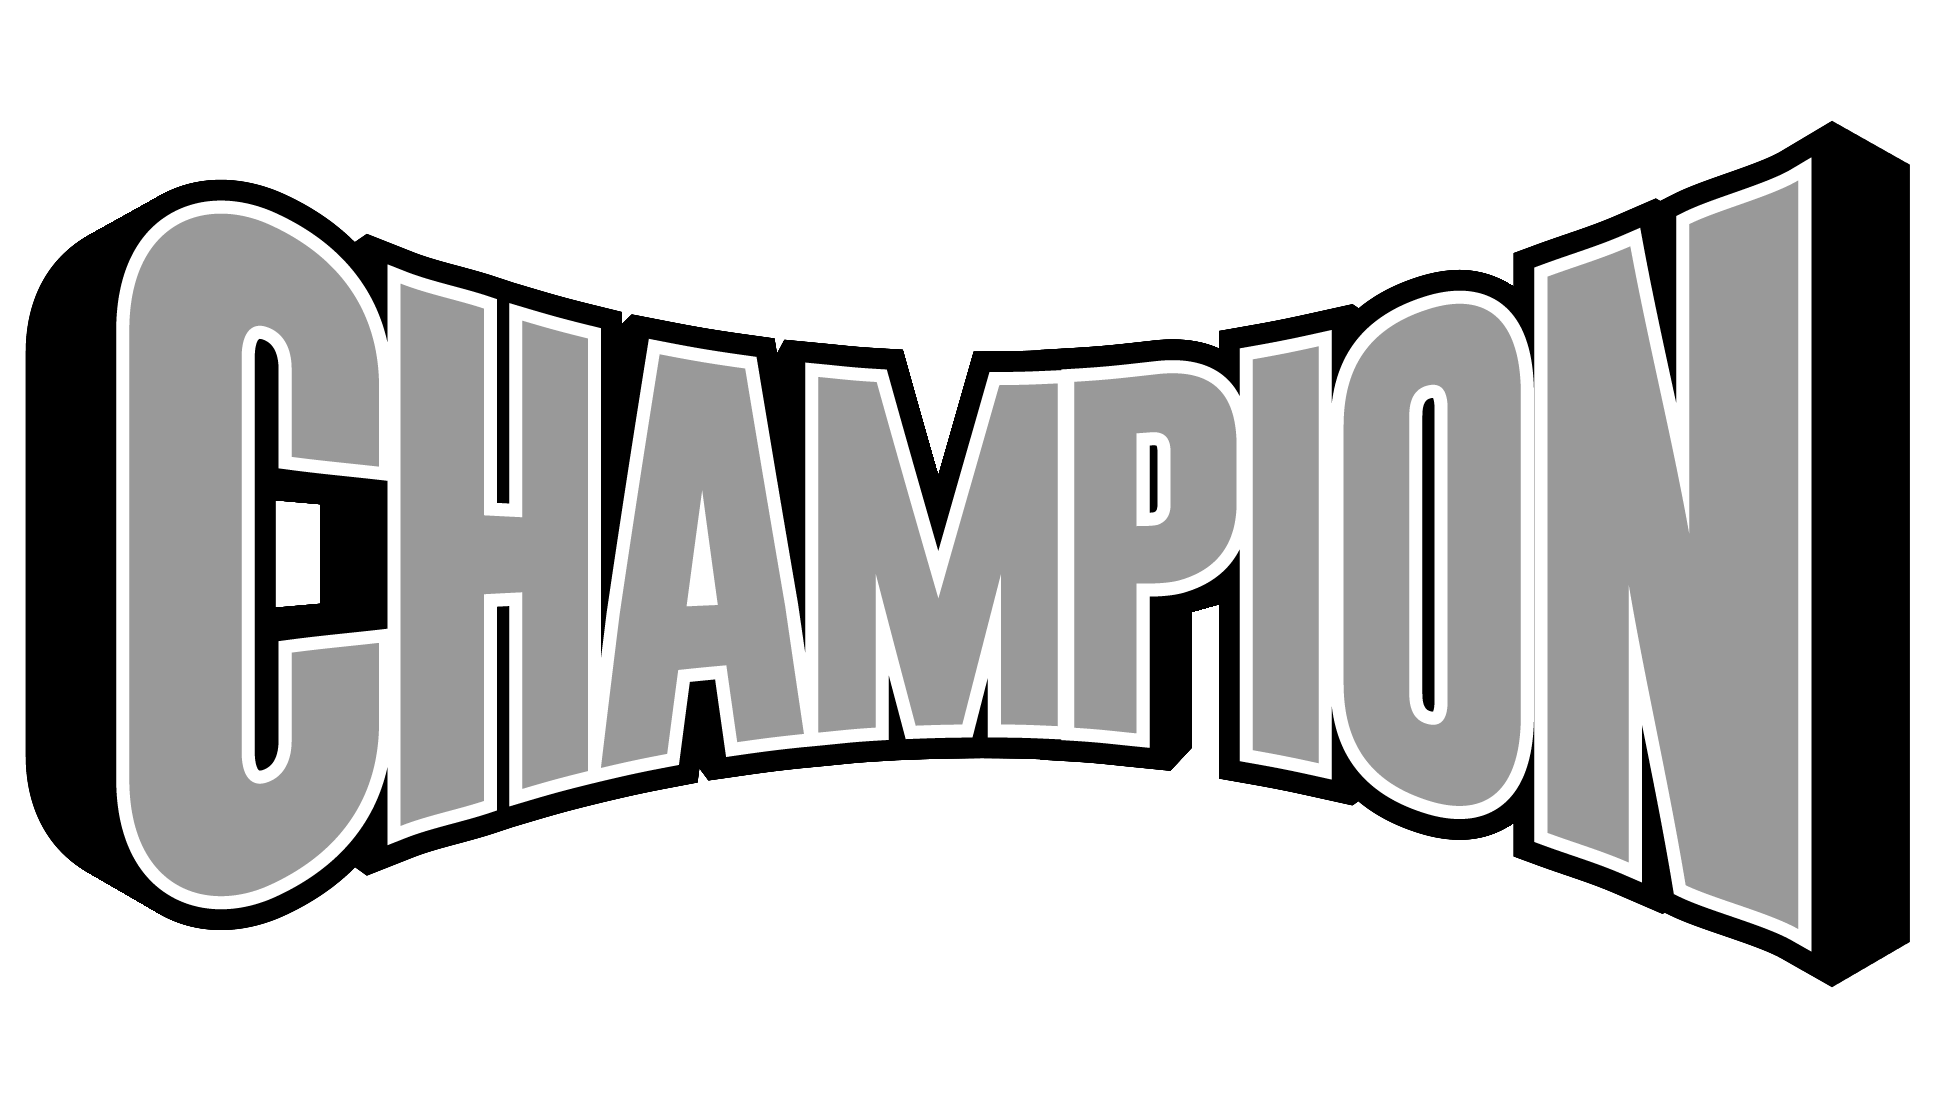 Champion Mazda Owensboro, KY Owensboro, KY